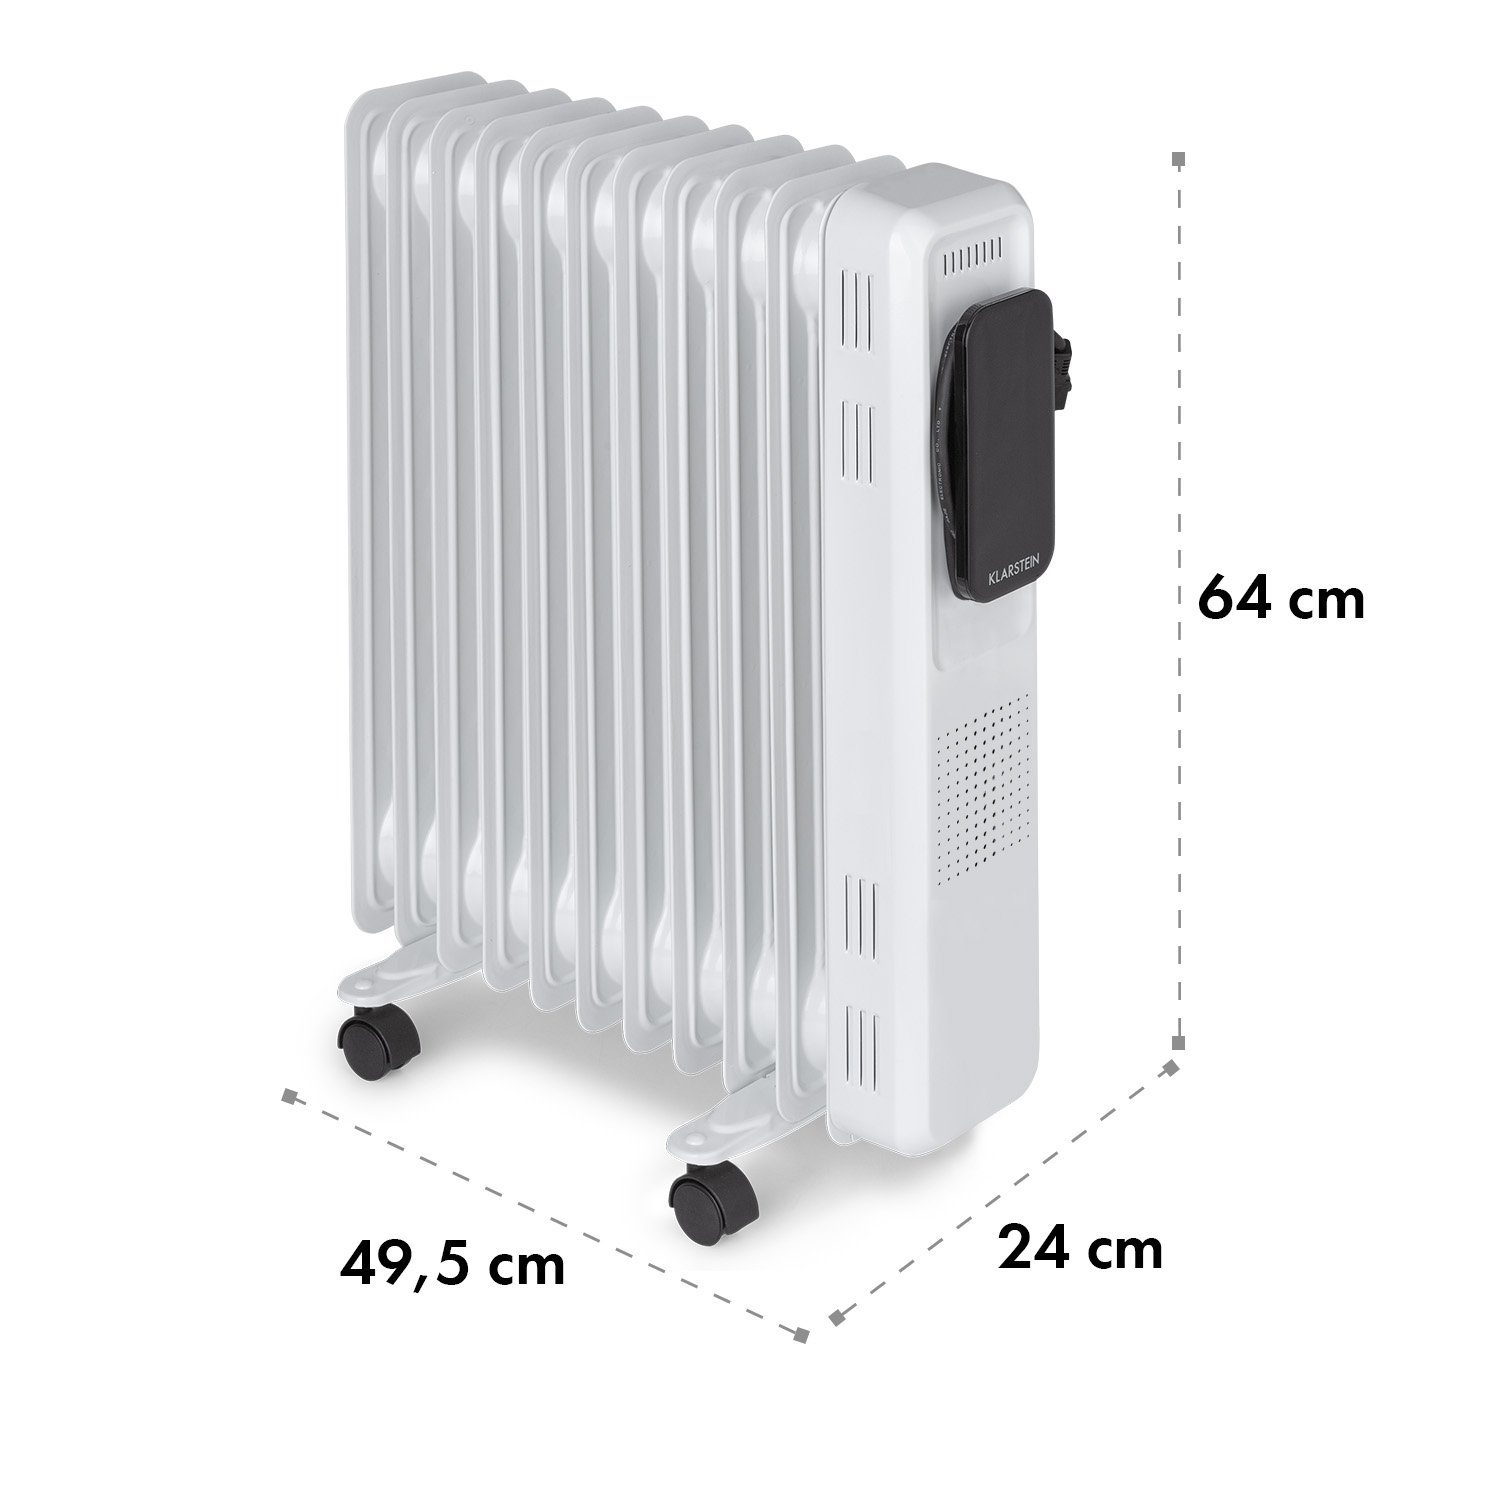 Thermostat Elevate energiesparend Ölradiator Thermaxx 2720 W, 10 Heizstrahler Heizkörper Smart, Klarstein Rippen Rollen